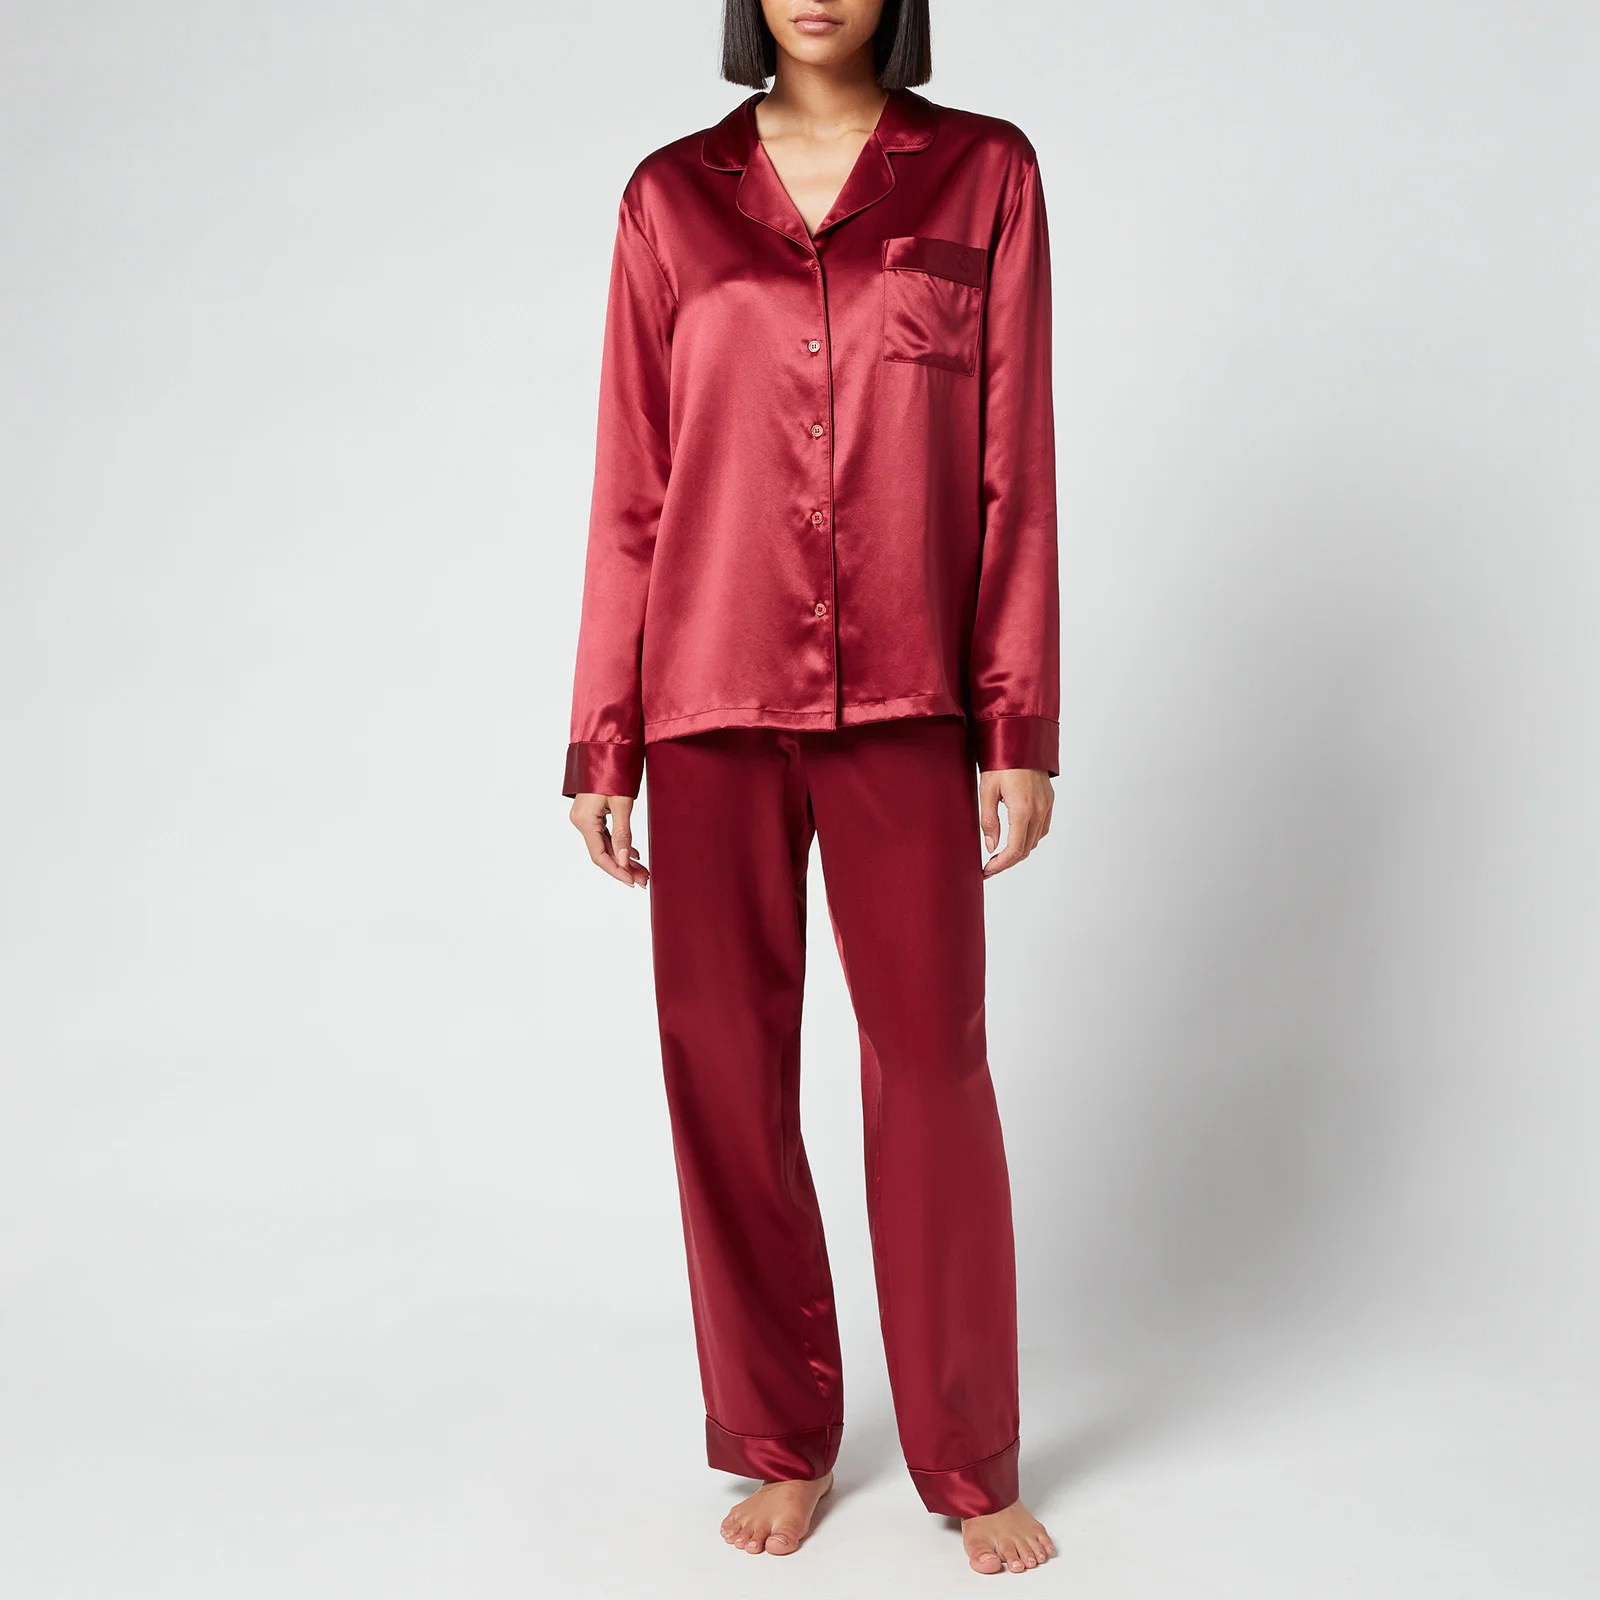 ESPA Silk Pyjamas - Claret Rose Image 1